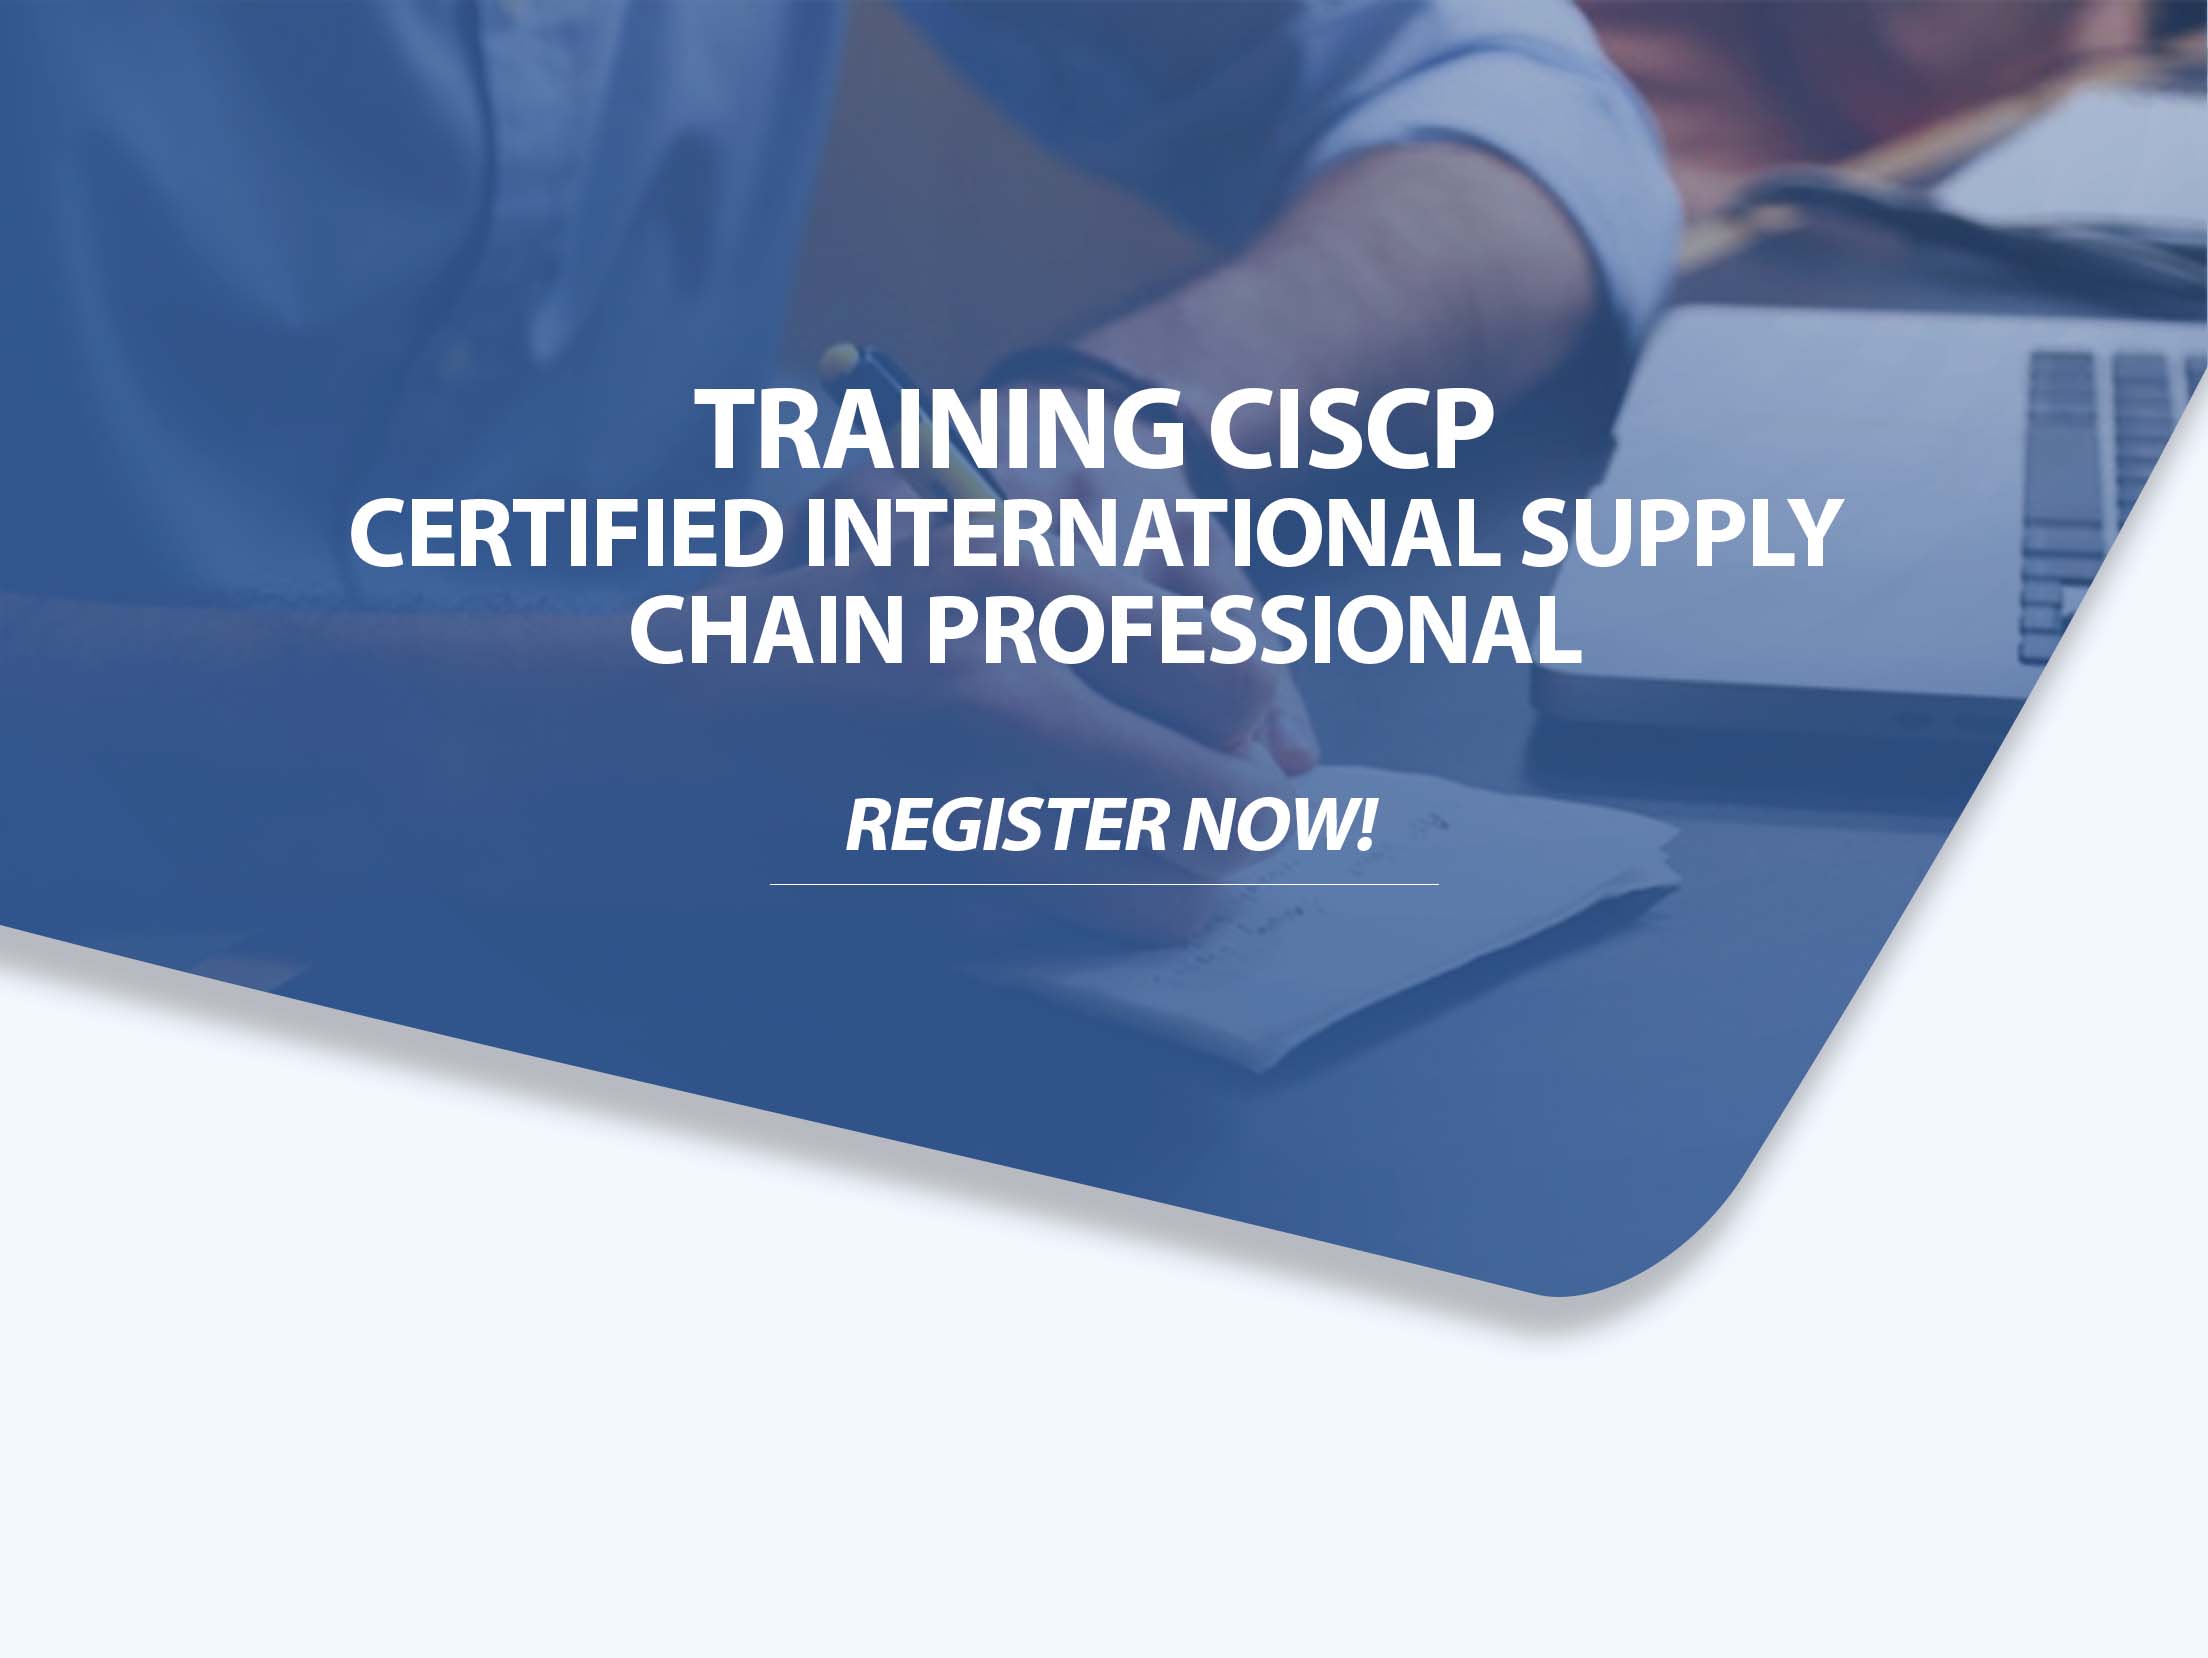 Training CISCP